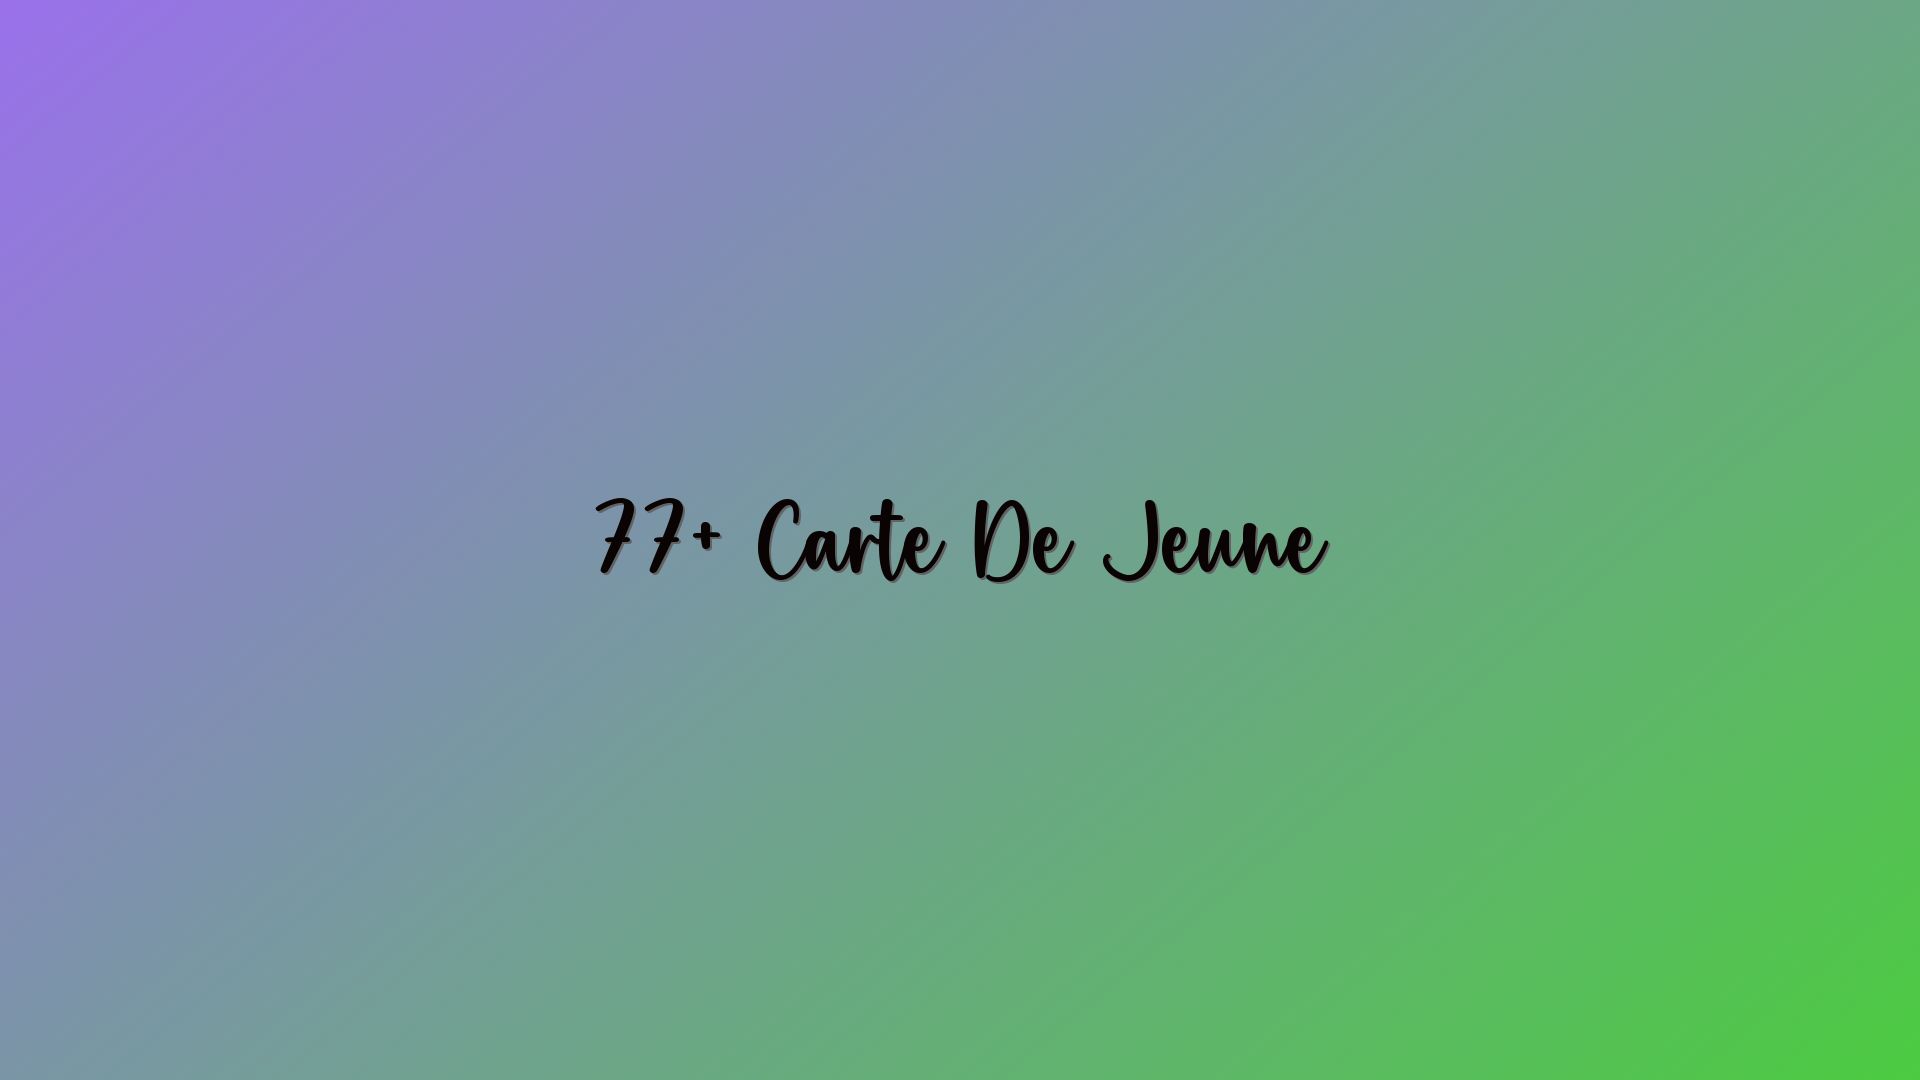 77+ Carte De Jeune